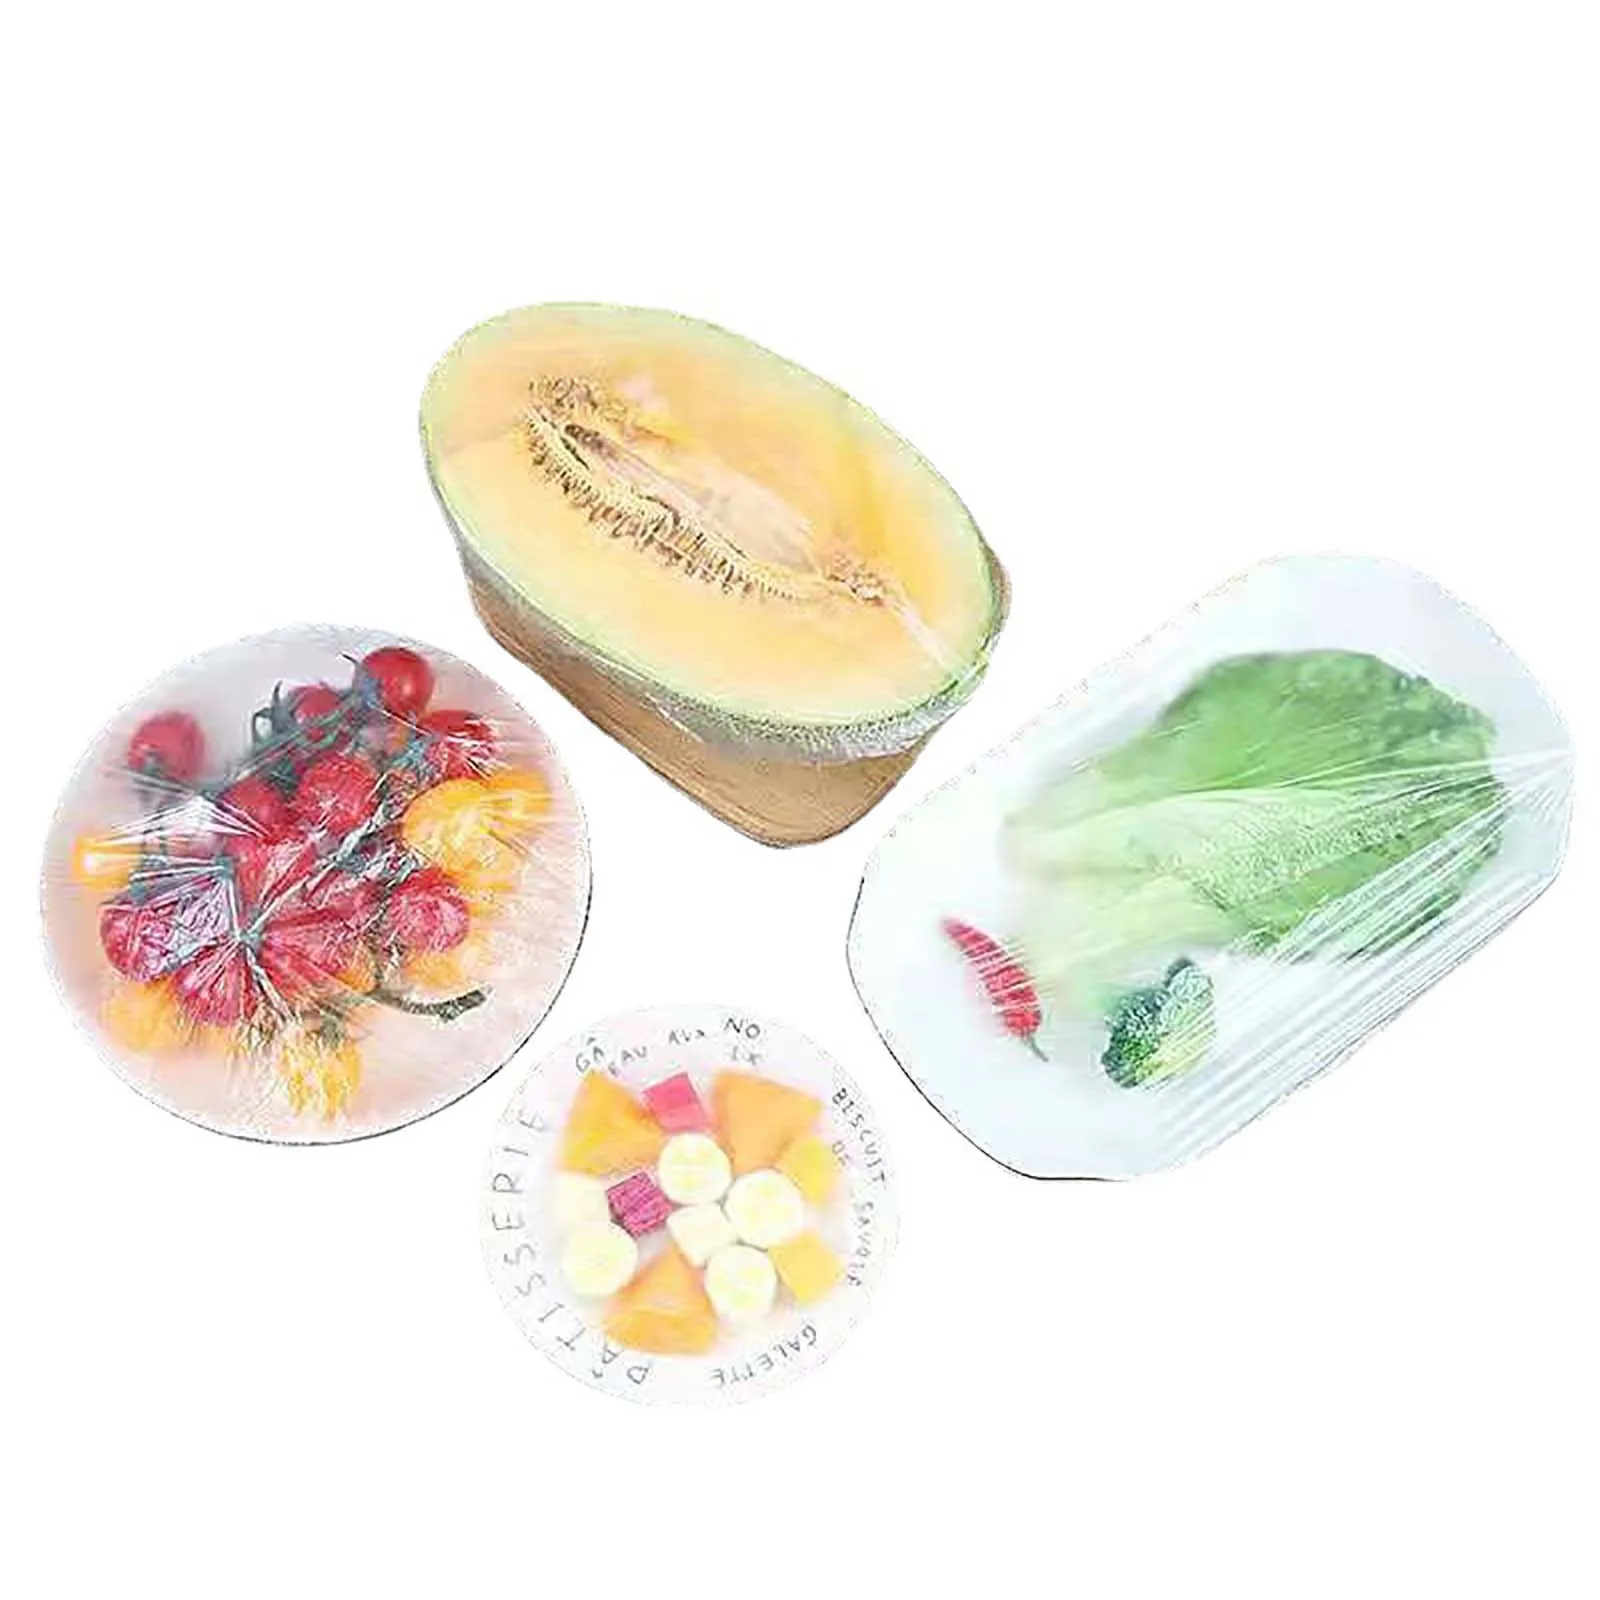 30PCS Elastic Food Covers Reusabl for Fruit Or Bowls Cups Dustproof Lids 